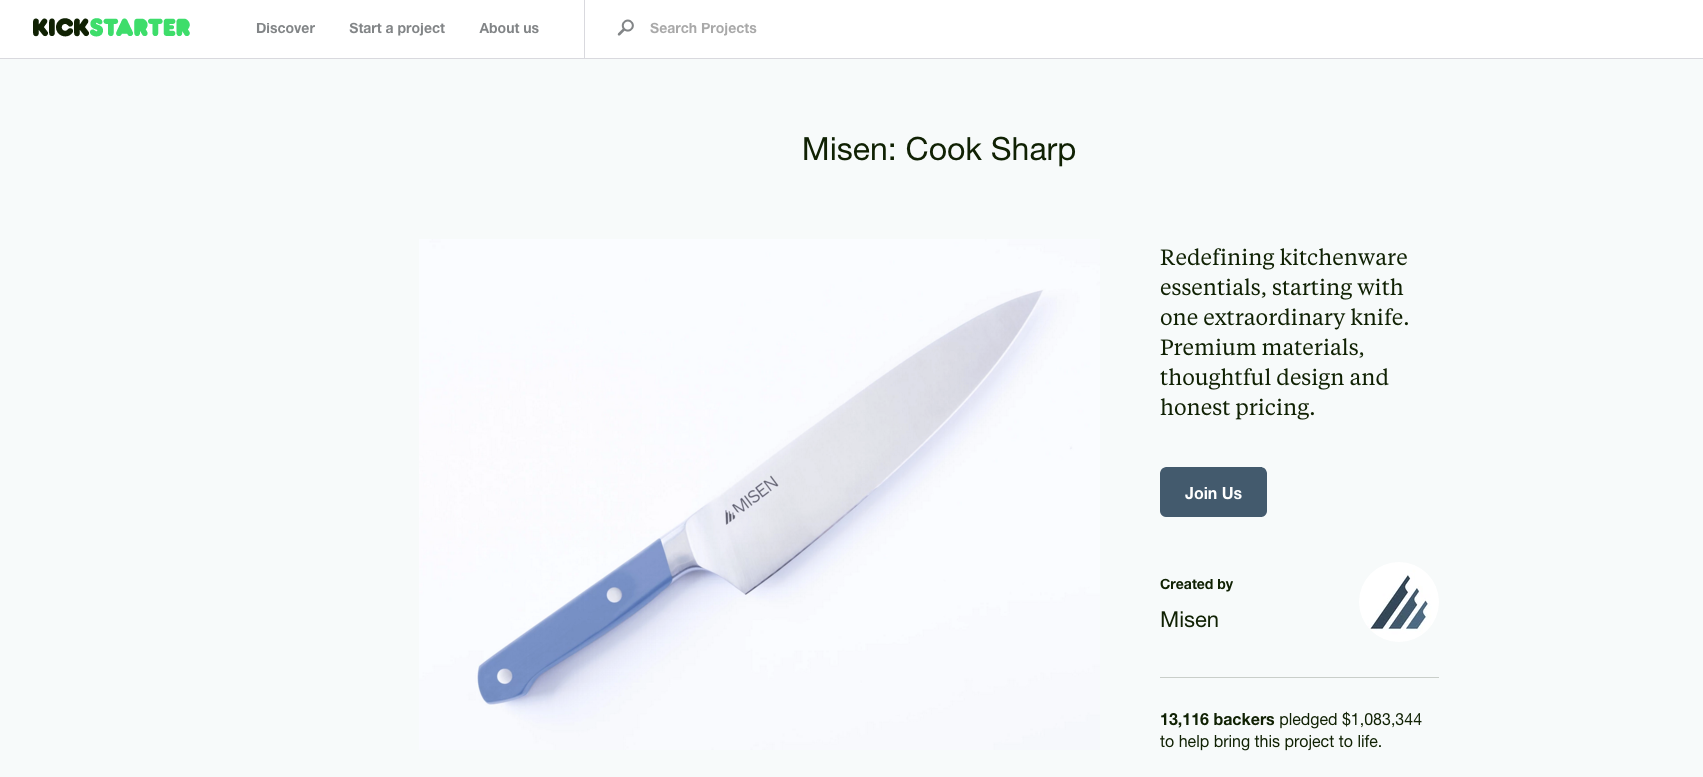 Misen knives reach start-up goals with sharp development process - DEVELOP3D